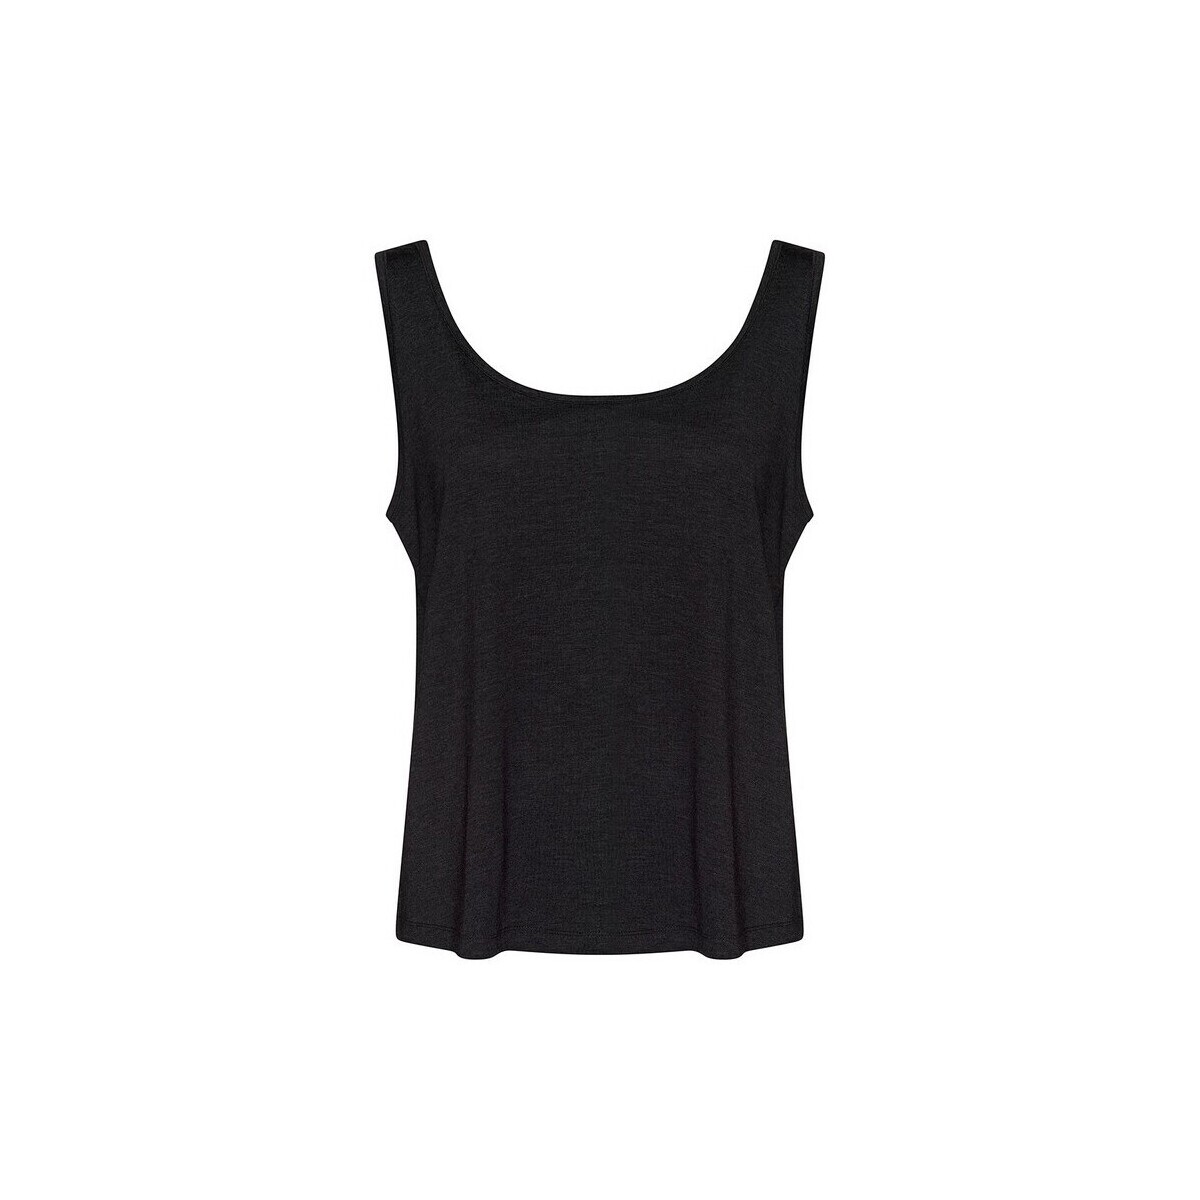 Vêtements Femme Débardeurs / T-shirts sans manche Awdis RW9001 Noir